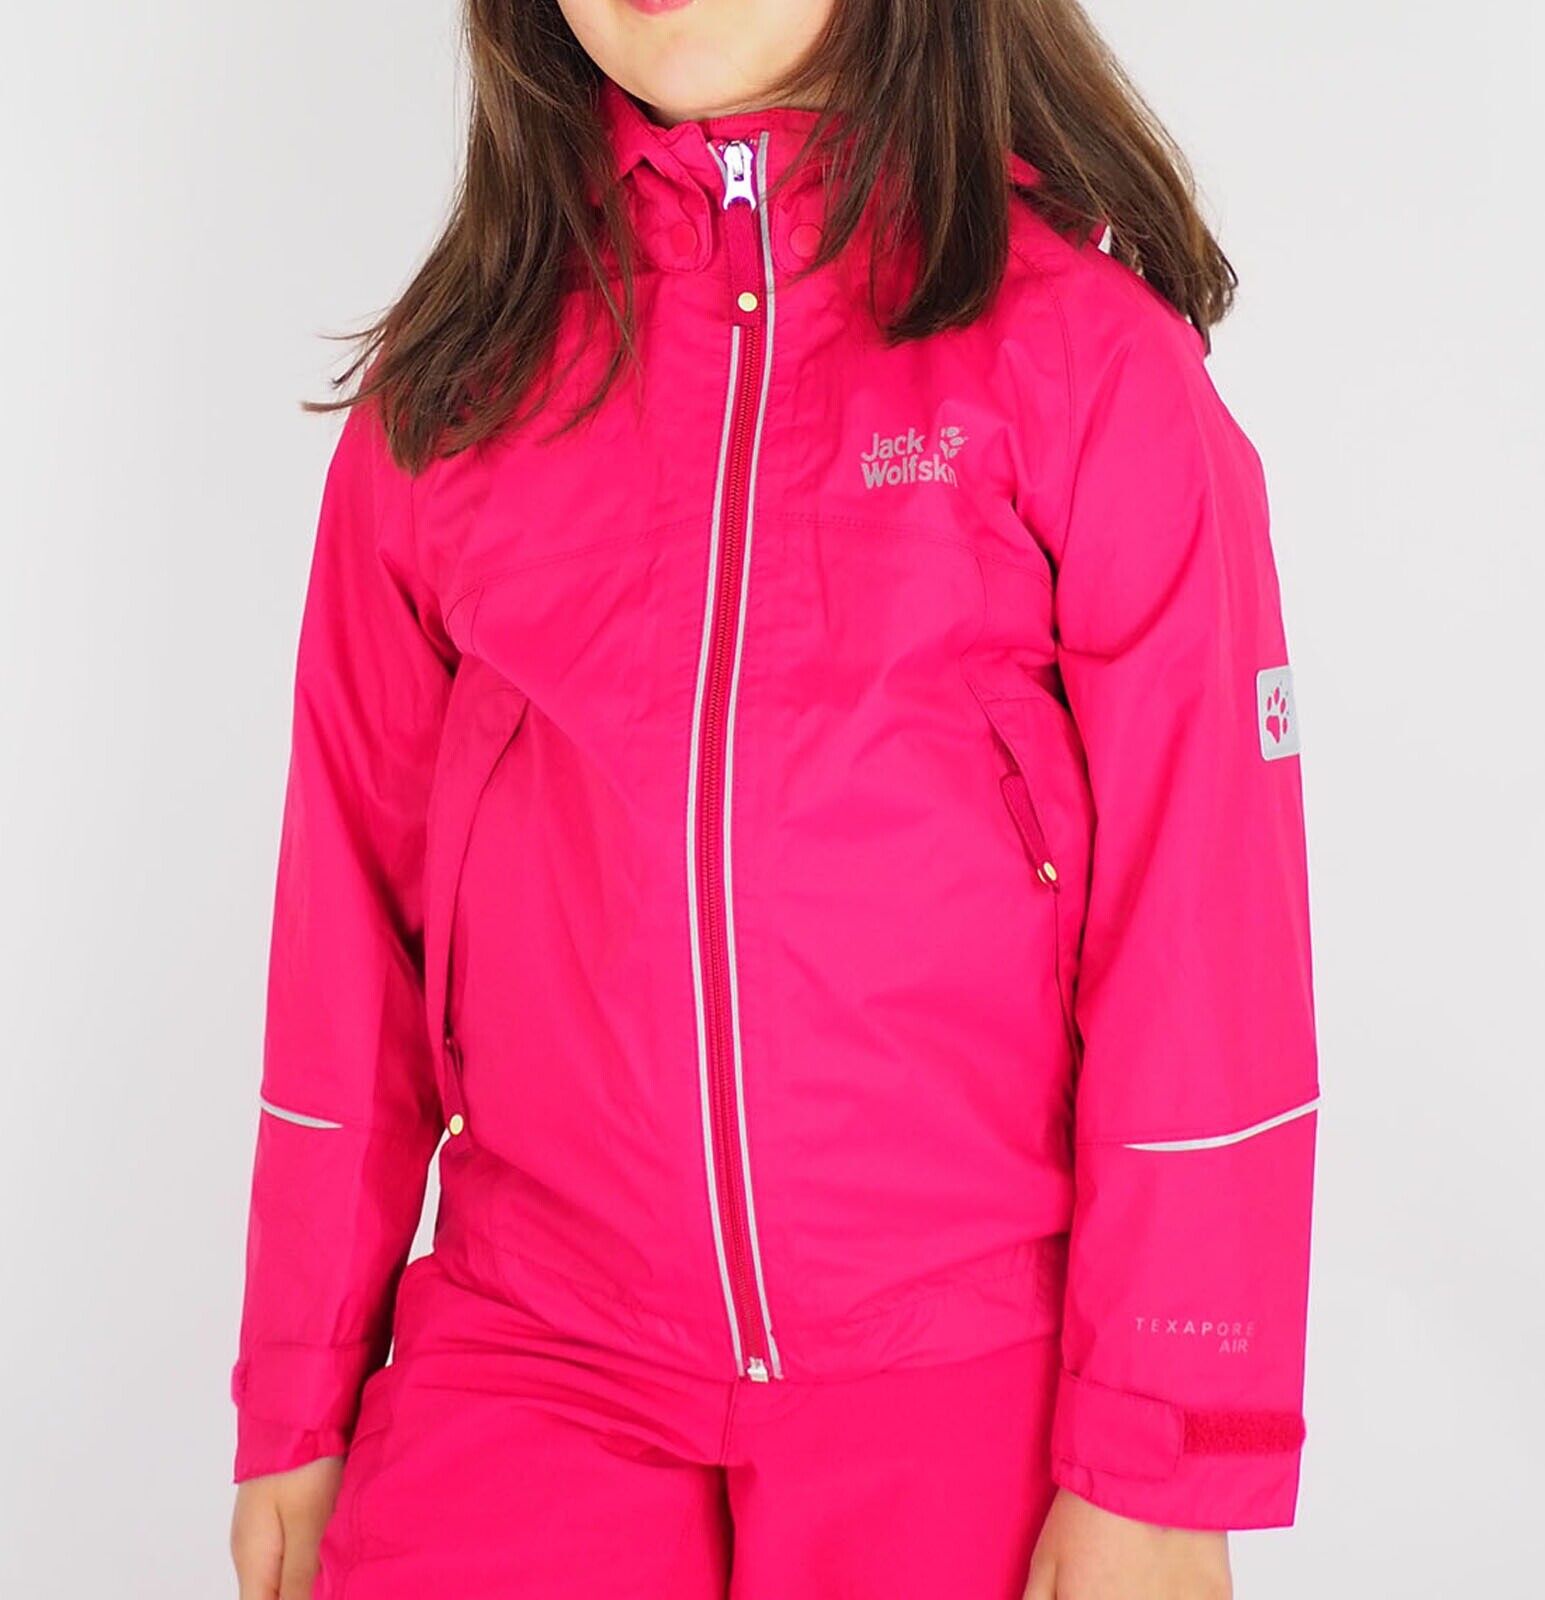 Girls Jack Wolfskin Crosswind Texapore 1604781 Azalea Red Waterproof Jacket - London Top Style